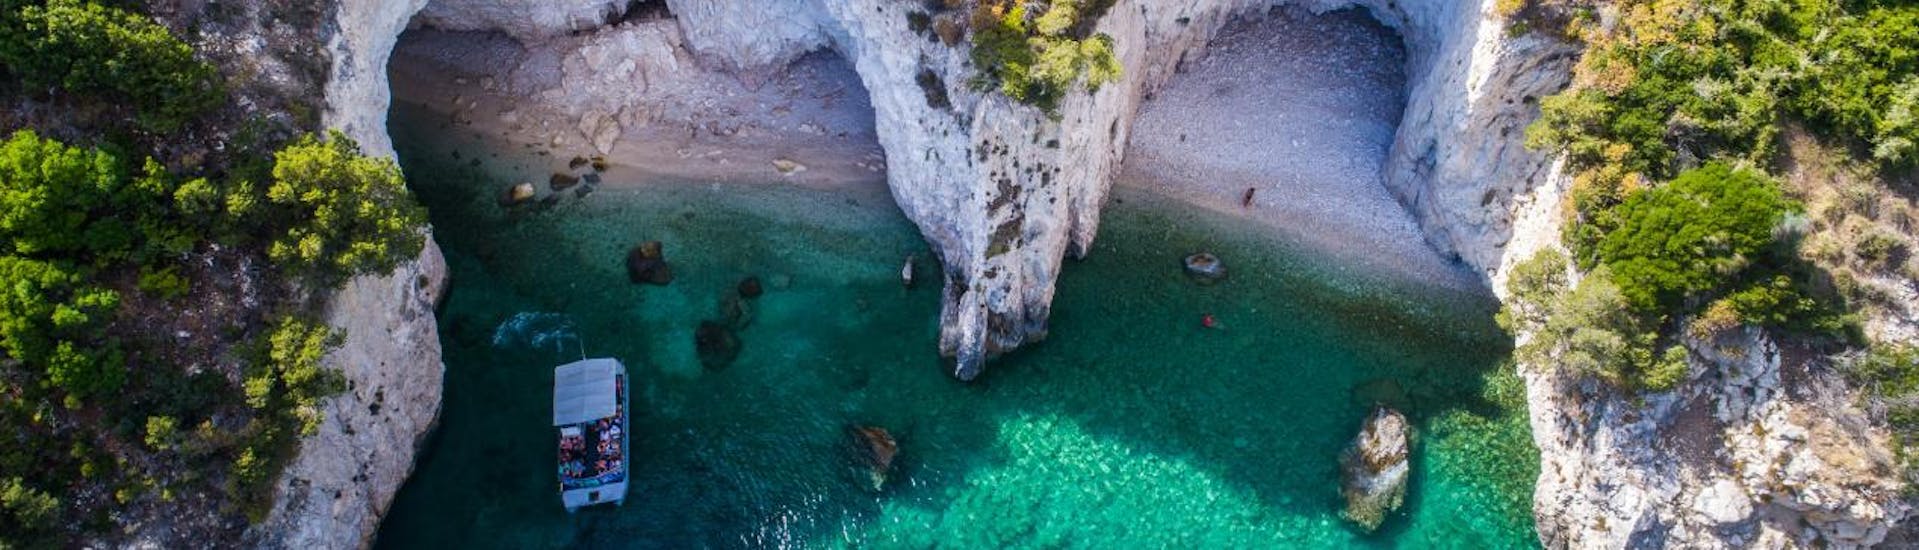 Uitzicht op de grotten die bezocht kunnen worden op de privé-boottocht naar de grotten van Keri en het scheepswrak met Traventure Zakynthos.